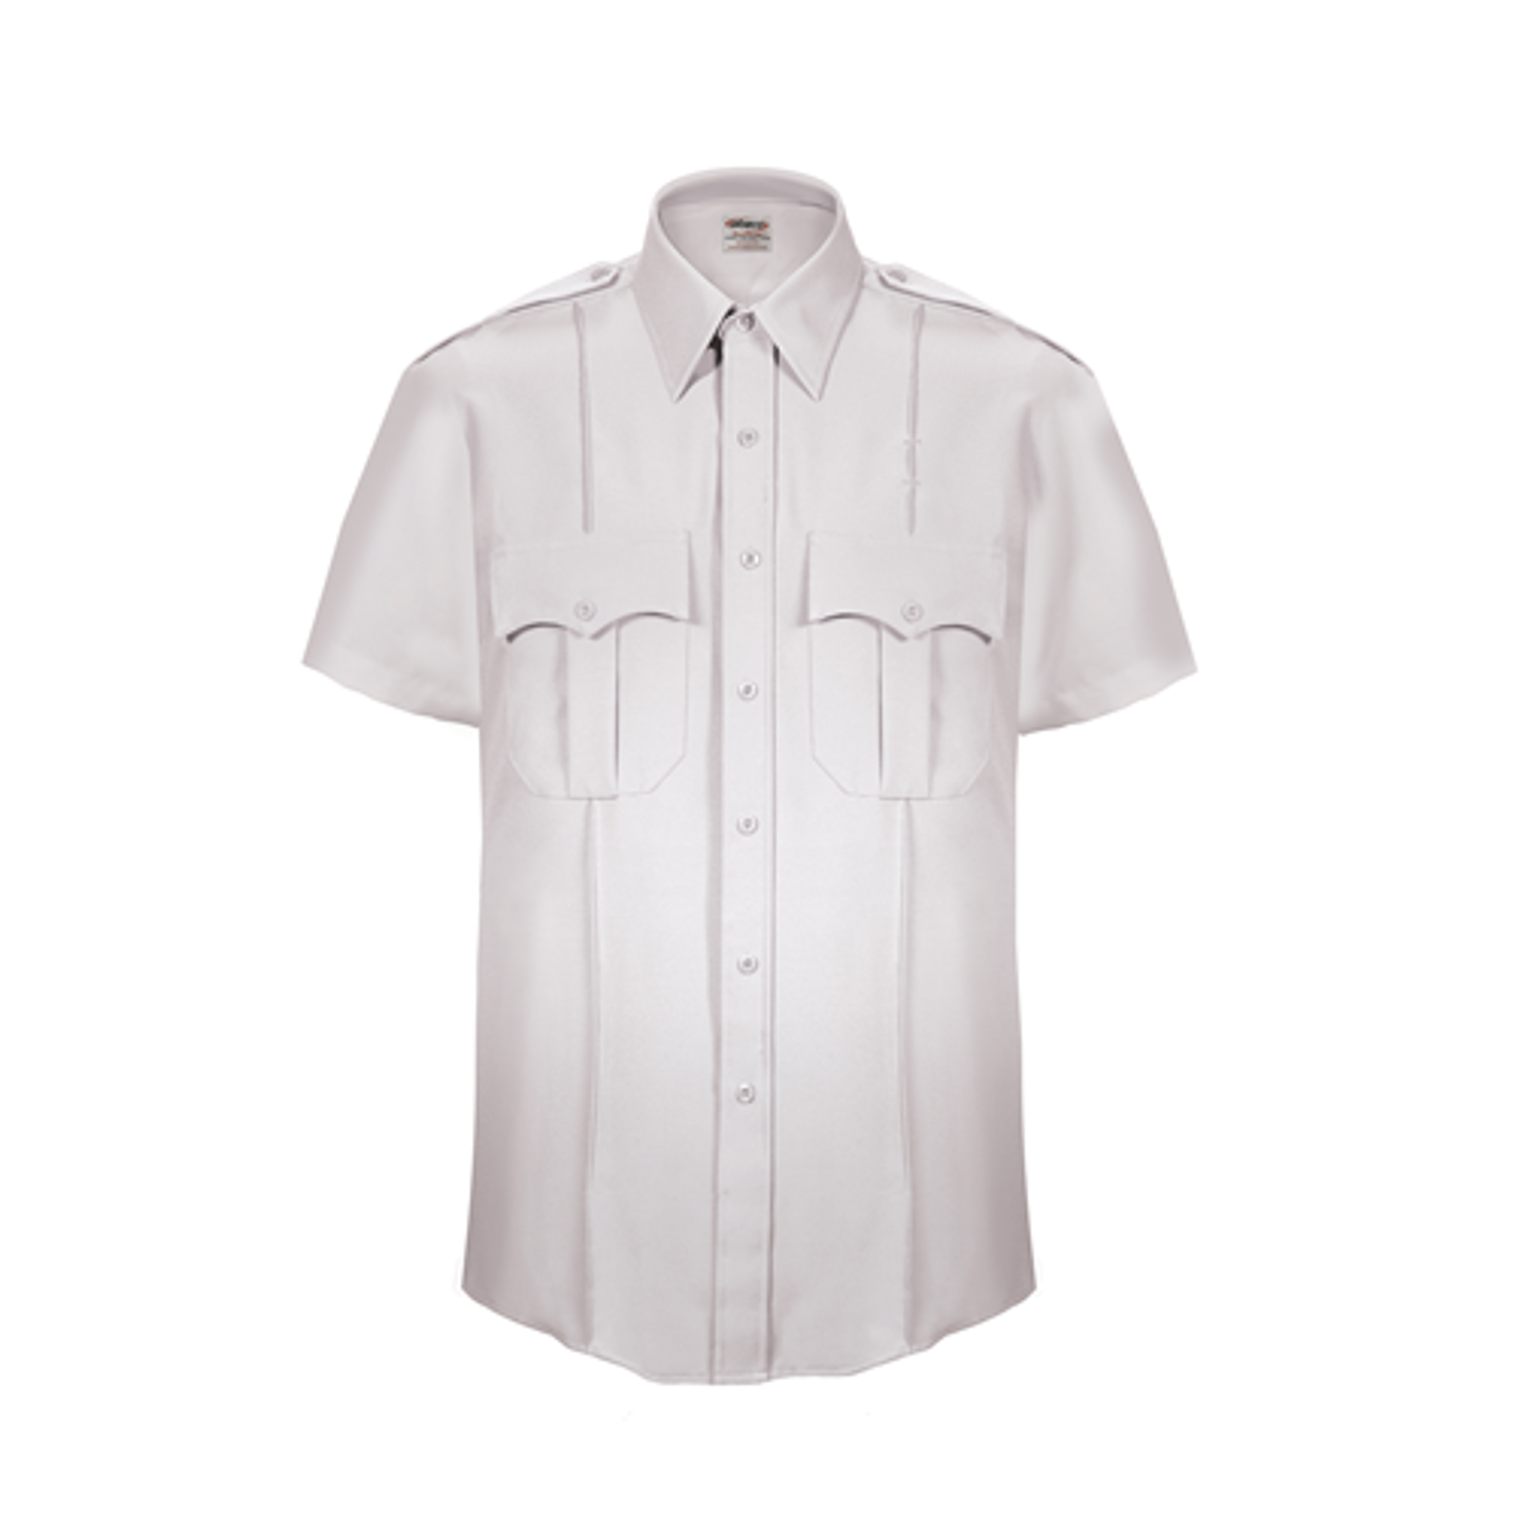 Textrop 2 Ss Shirt - Zippered